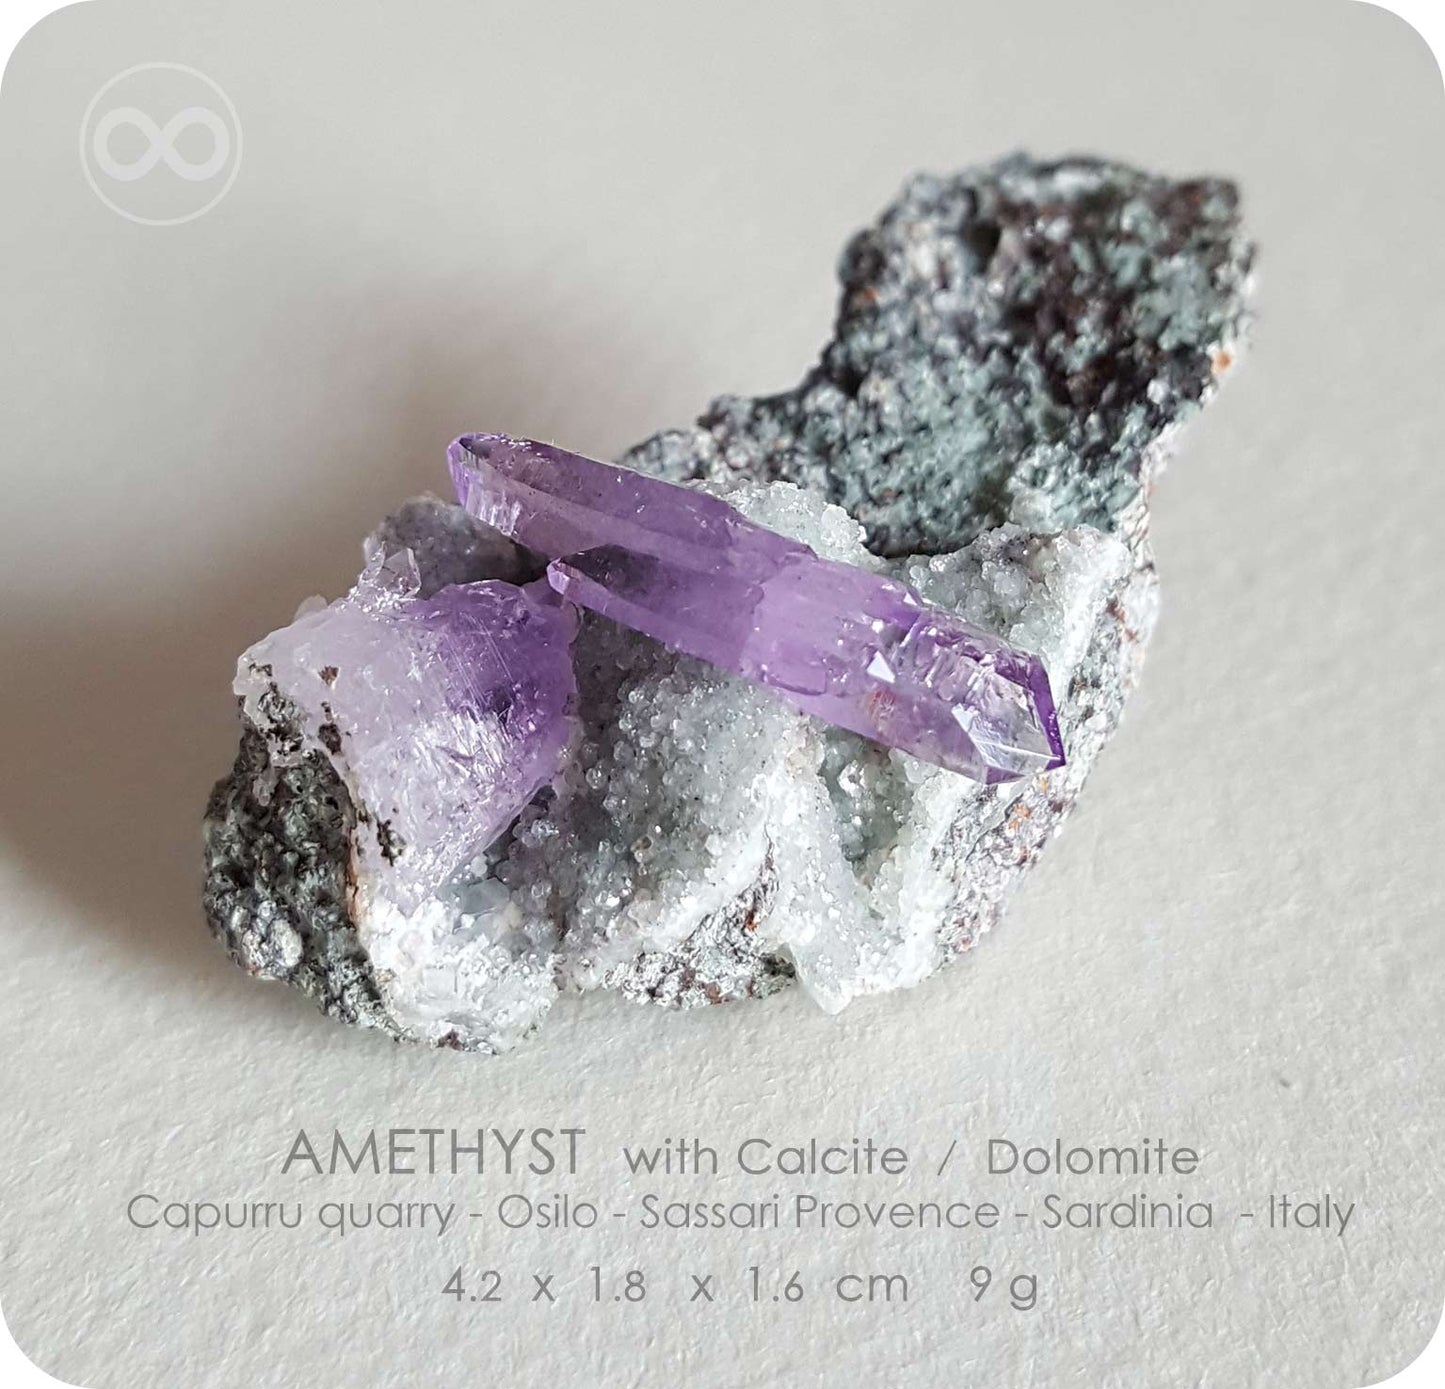 星紀圖 ♦ 紫水晶 :: 雙端細緻晶體 :: 母礦岩 :: 方解石 白雲石 共生 :: Sardinia Italy [ A07 ]